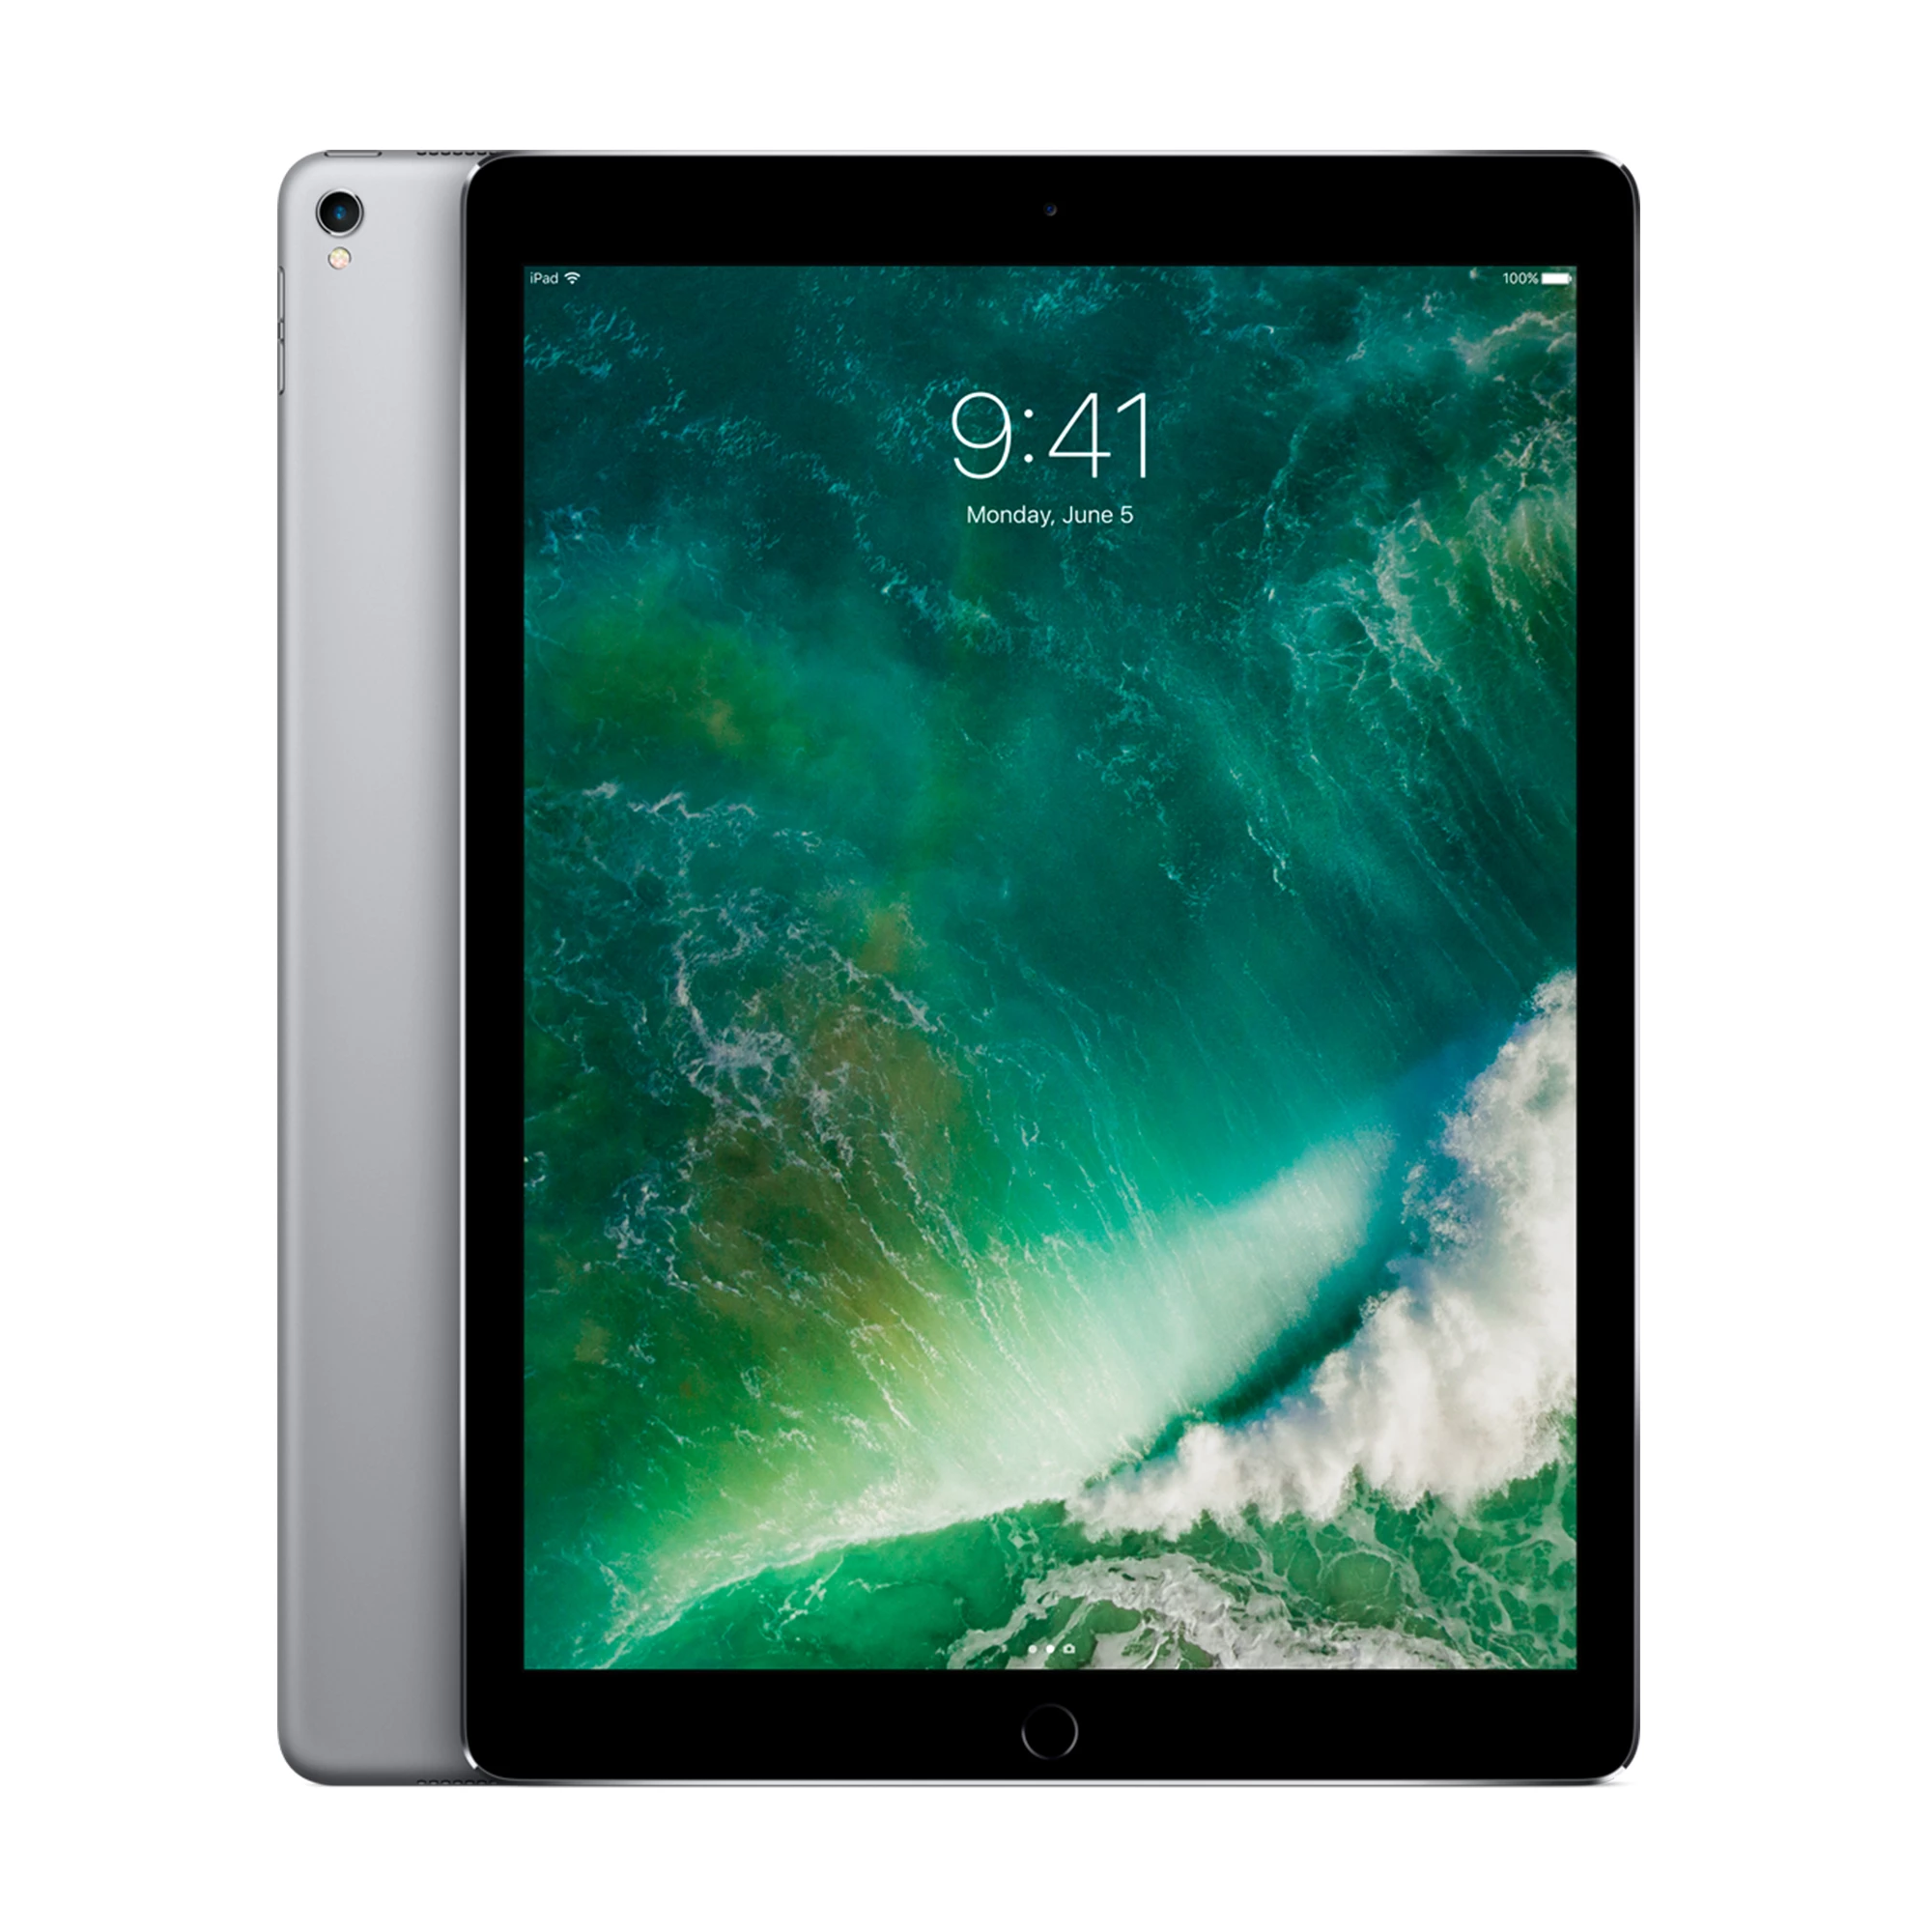 iPad Pro 12.9" (2017) Wi-Fi 64GB Space Gray (MQDA2)